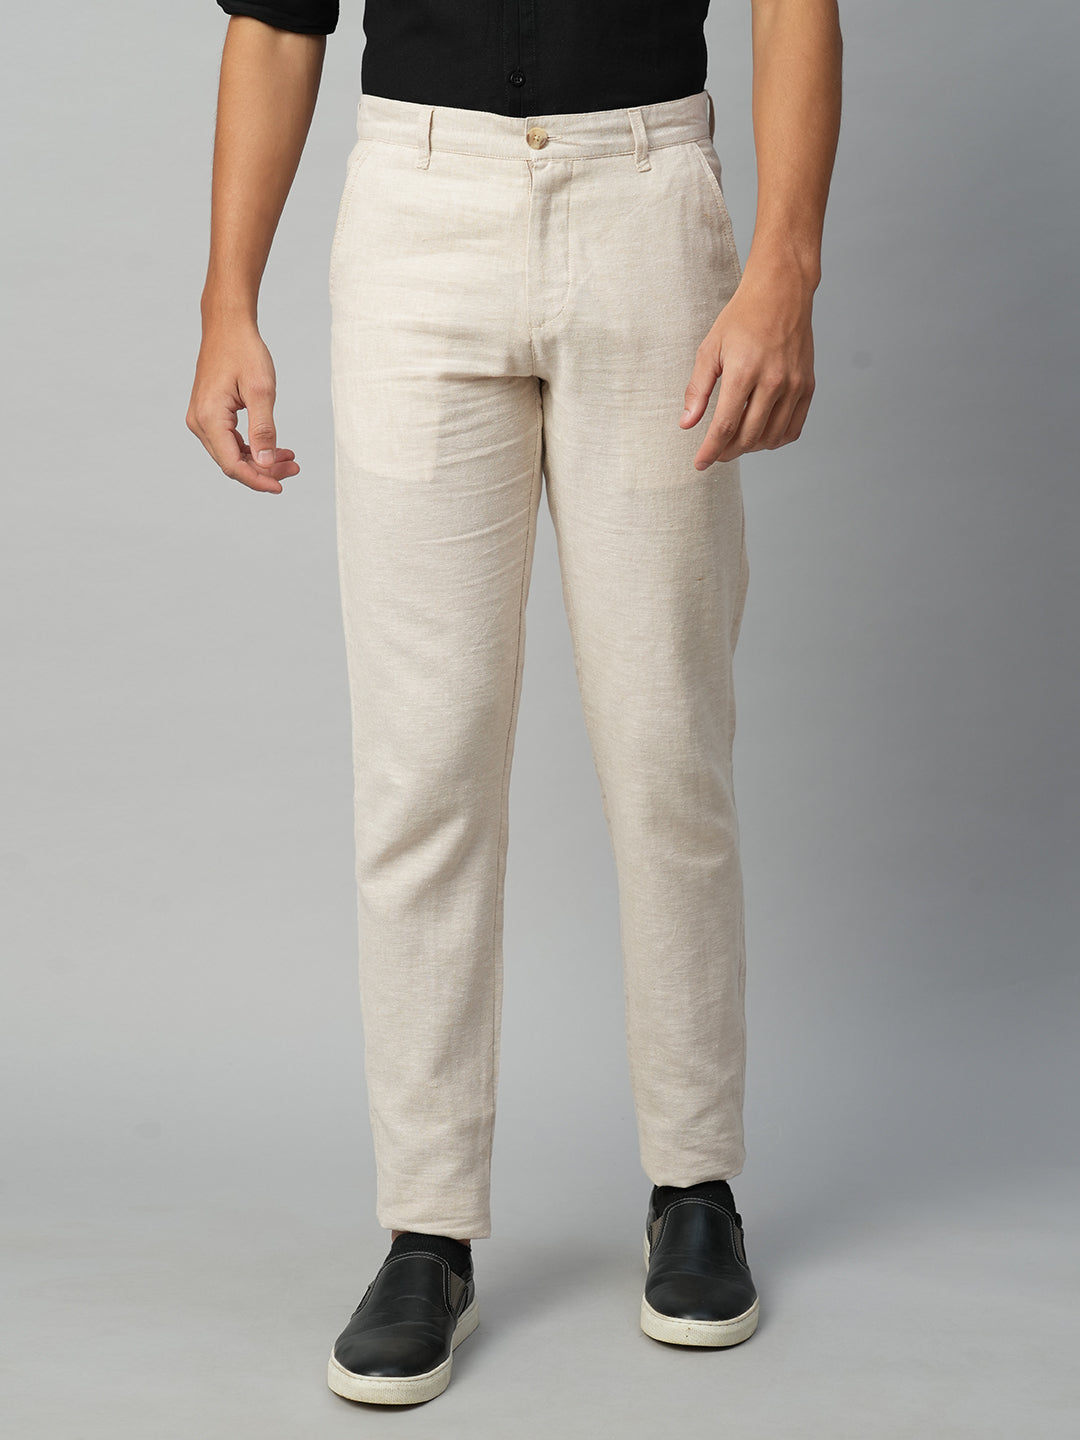 Cross Cotton Straight Pants  MARCELO BURLON Official Site